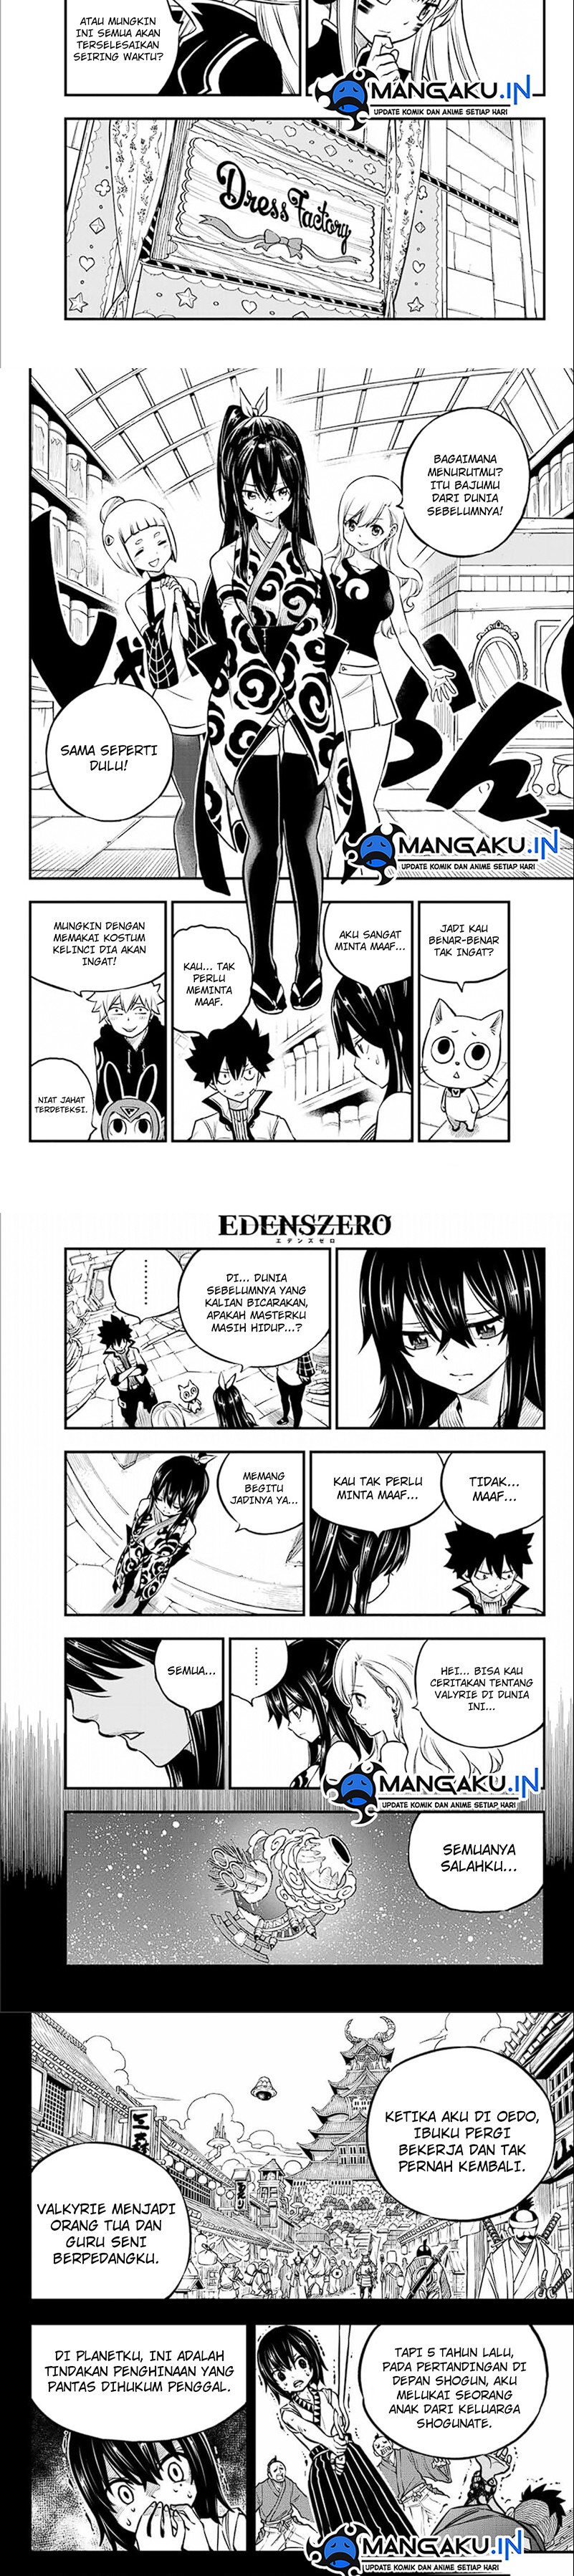 Eden’s Zero Chapter 232